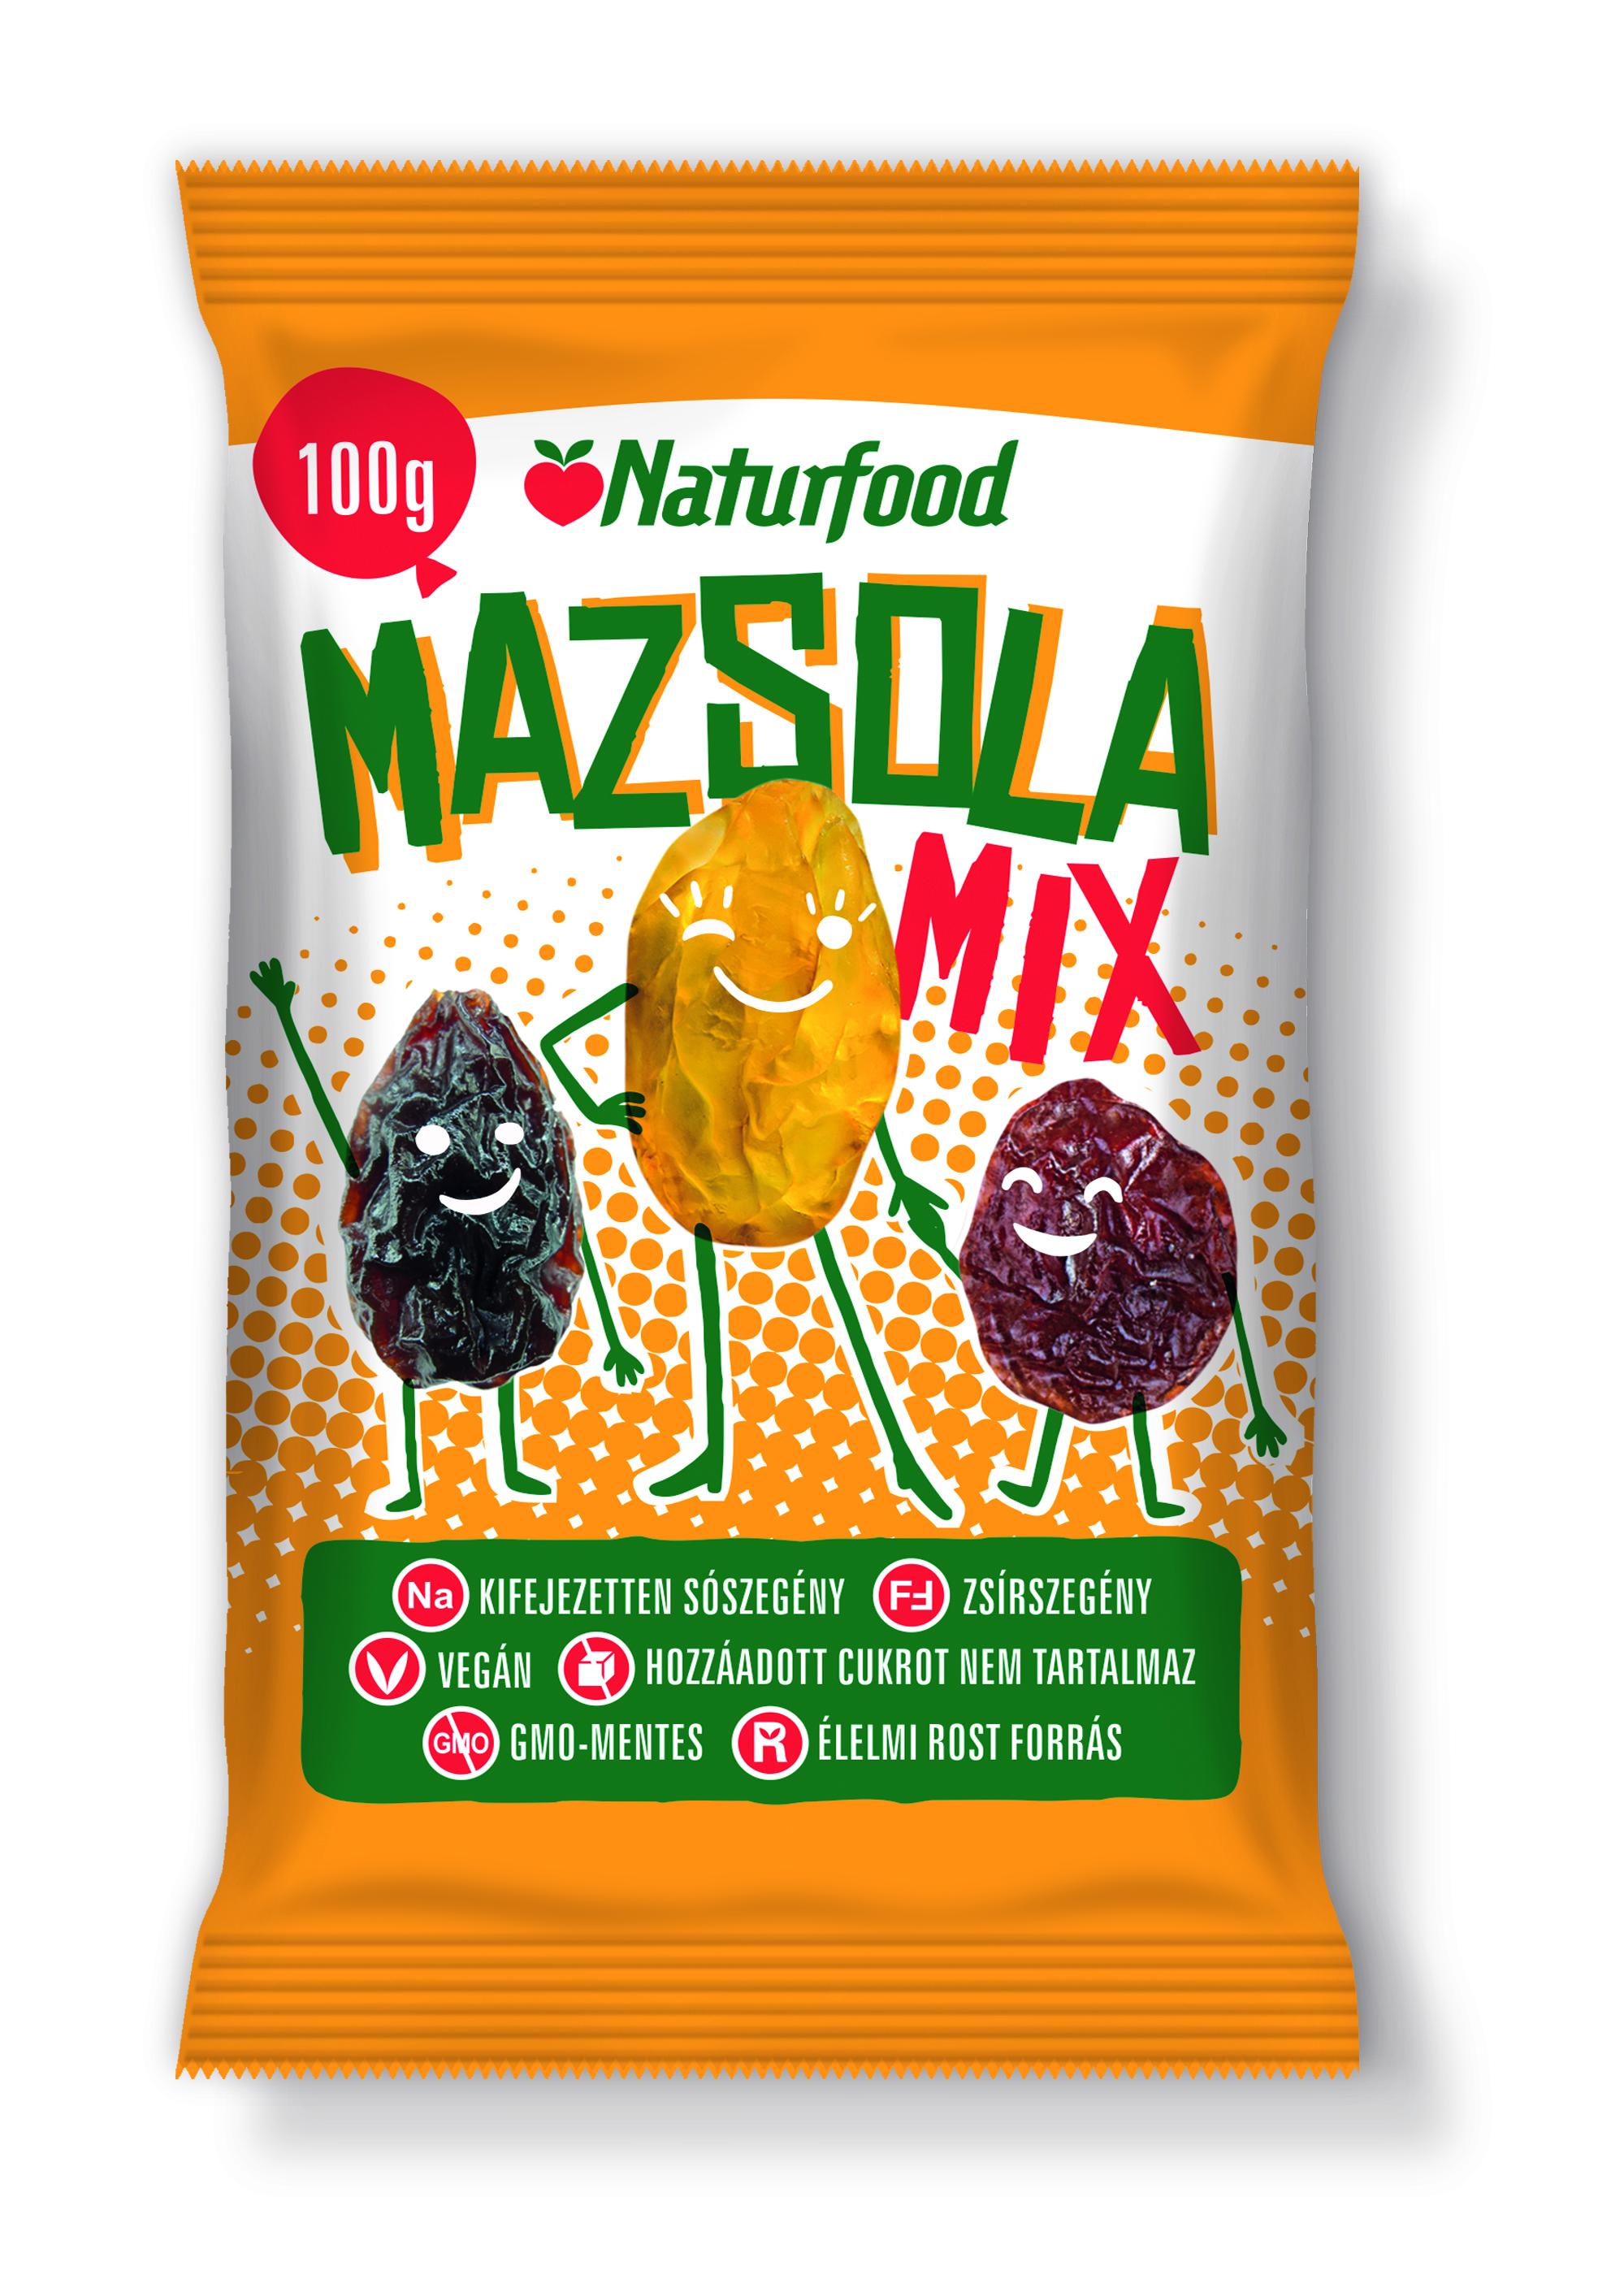 Naturfood mazsola mix 100 g